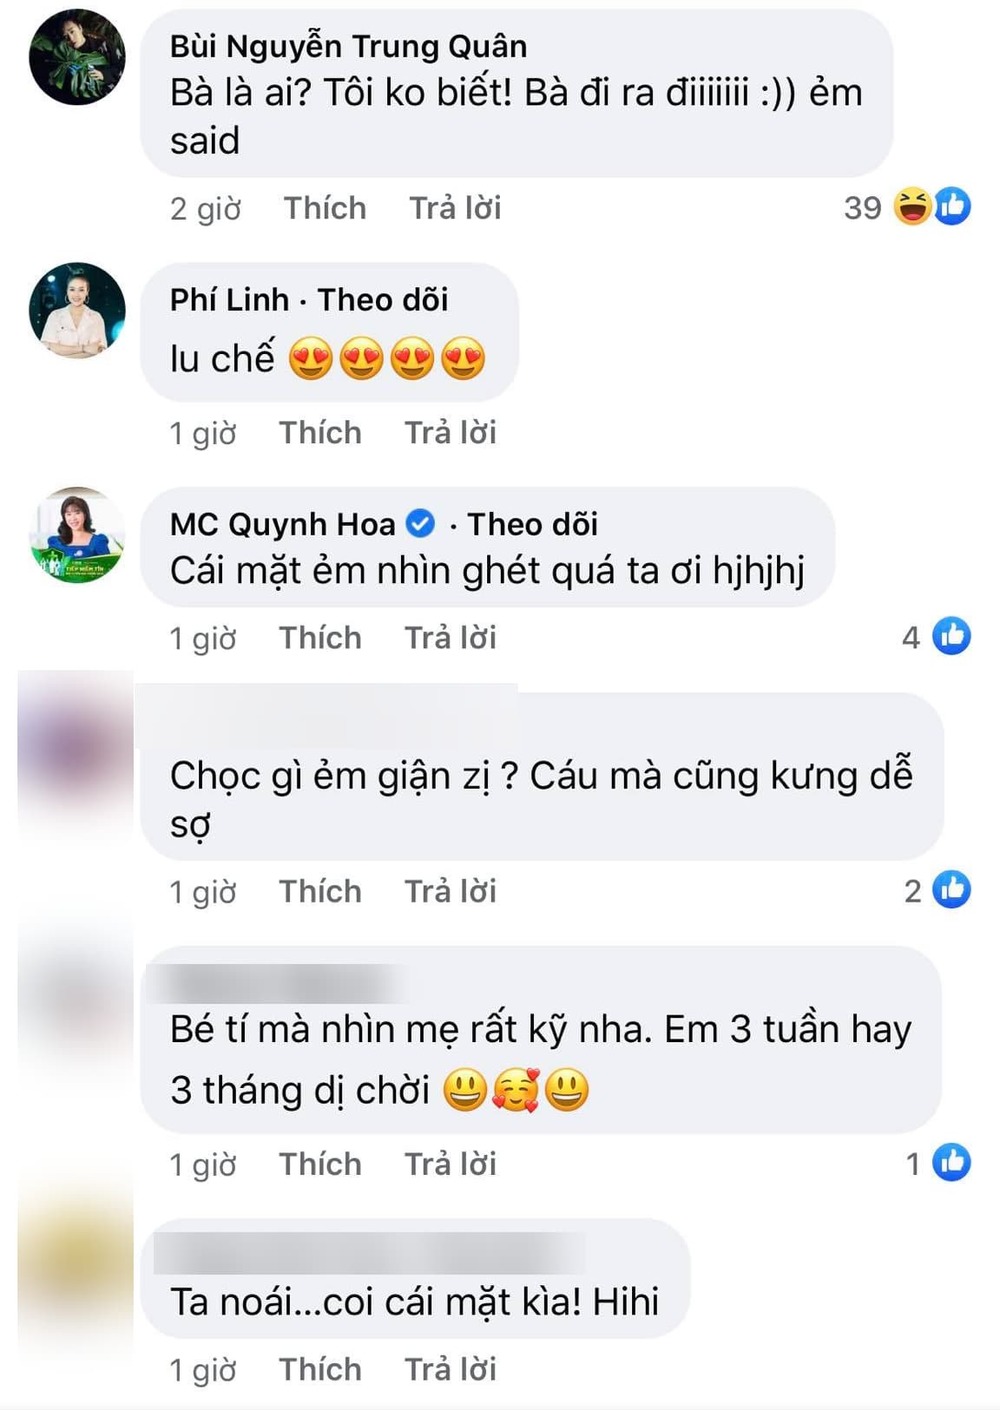  
Nhiều sao Việt và người hâm mộ thể hiện tình cảm yêu mến với ái nữ nhà Võ Hạ Trâm. (Ảnh: Chụp màn hình)